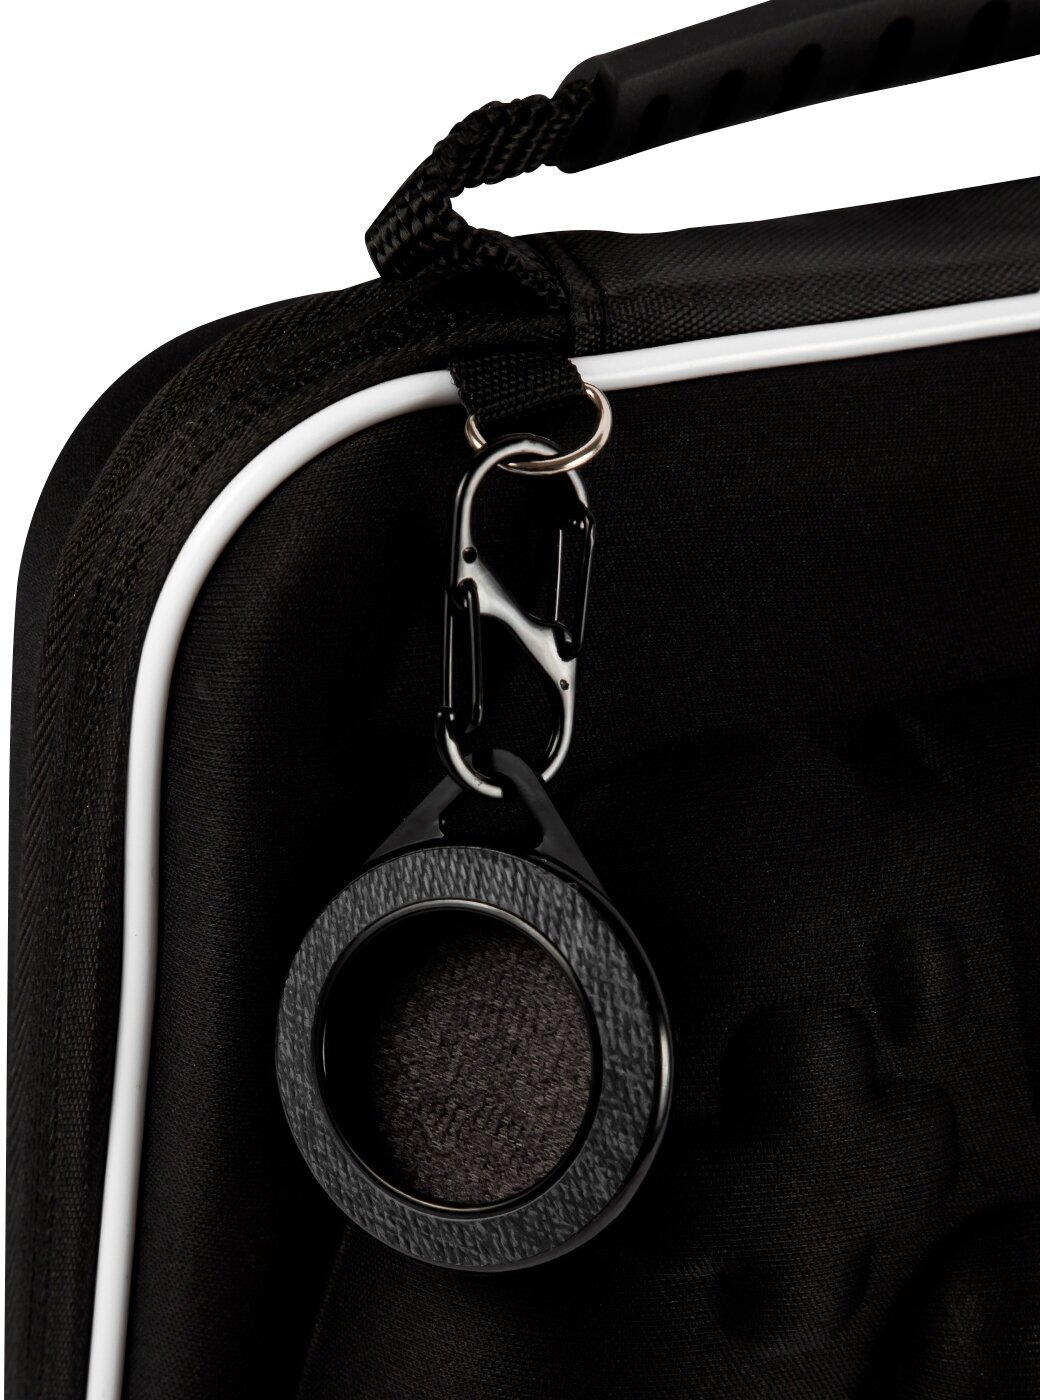 Чехол-брелок с карабином для Apple AirTag/Эпл Айртаг/поисковая метка-трекер пластиковый, черный